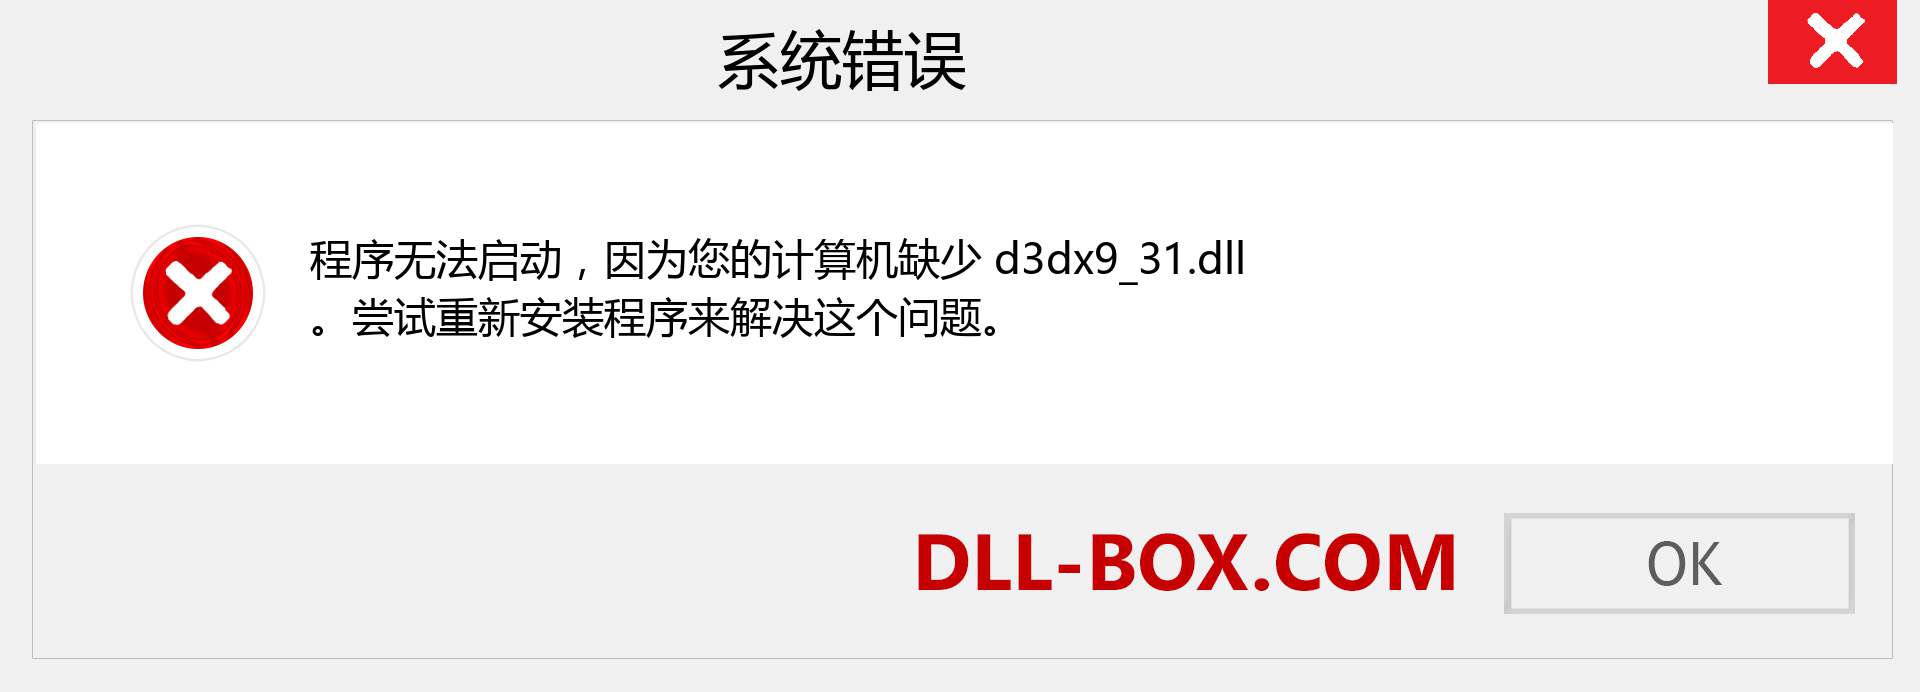 d3dx9_31.dll 文件丢失？。 适用于 Windows 7、8、10 的下载 - 修复 Windows、照片、图像上的 d3dx9_31 dll 丢失错误